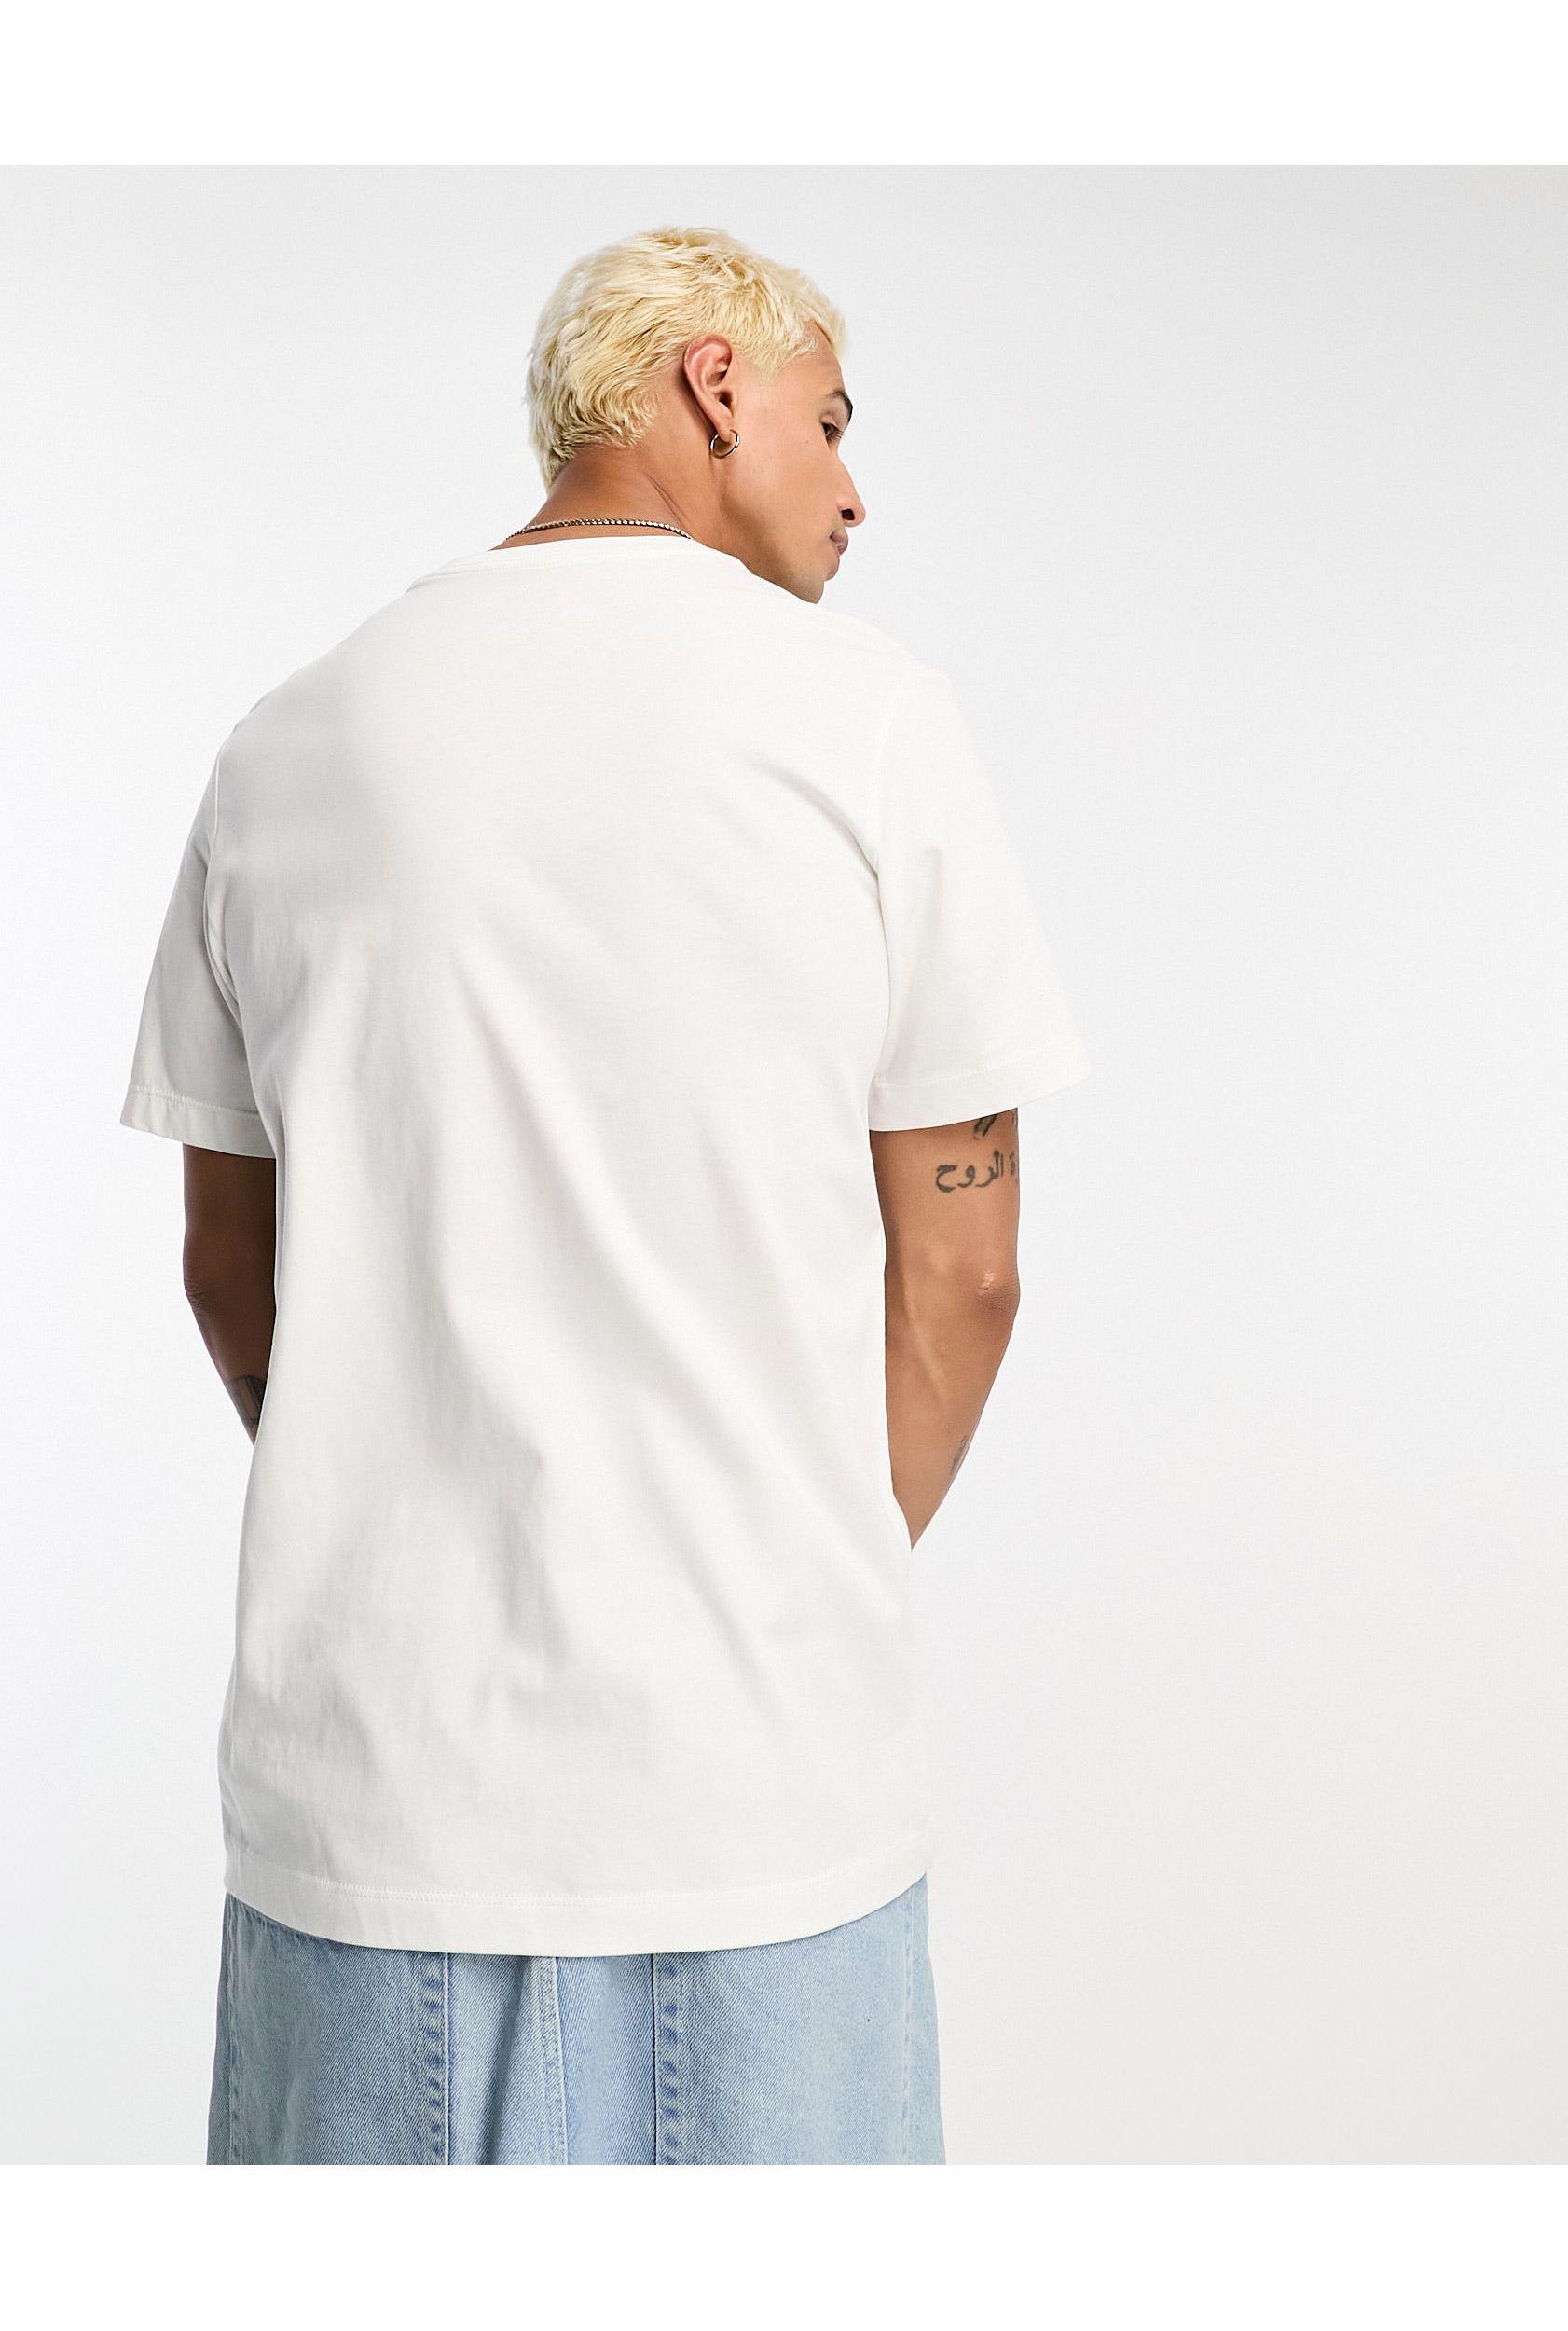 Nike Animal Print Box Logo T-shirt in White for Men | Lyst